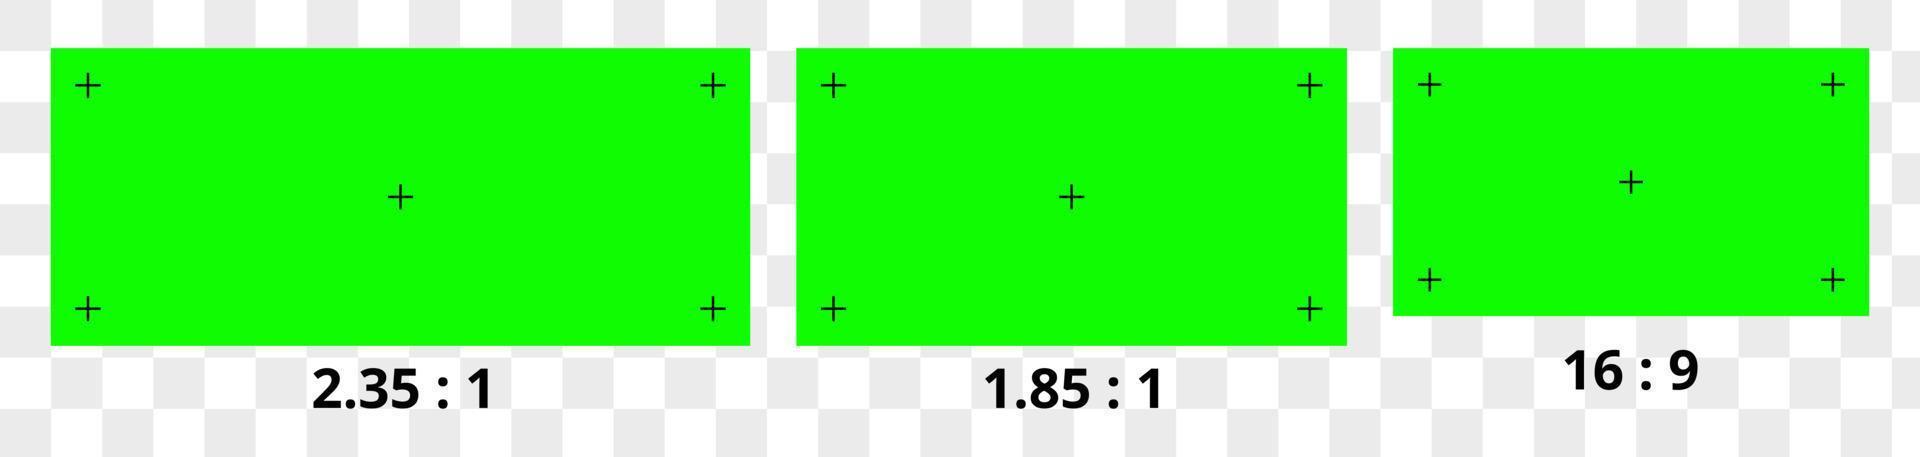 illustrazione vettoriale di sfondo dello schermo verde. marcatori di tracciamento del movimento vfx. elemento di marcatori di tracciamento di sostituzione di riprese video di concetto astratto.